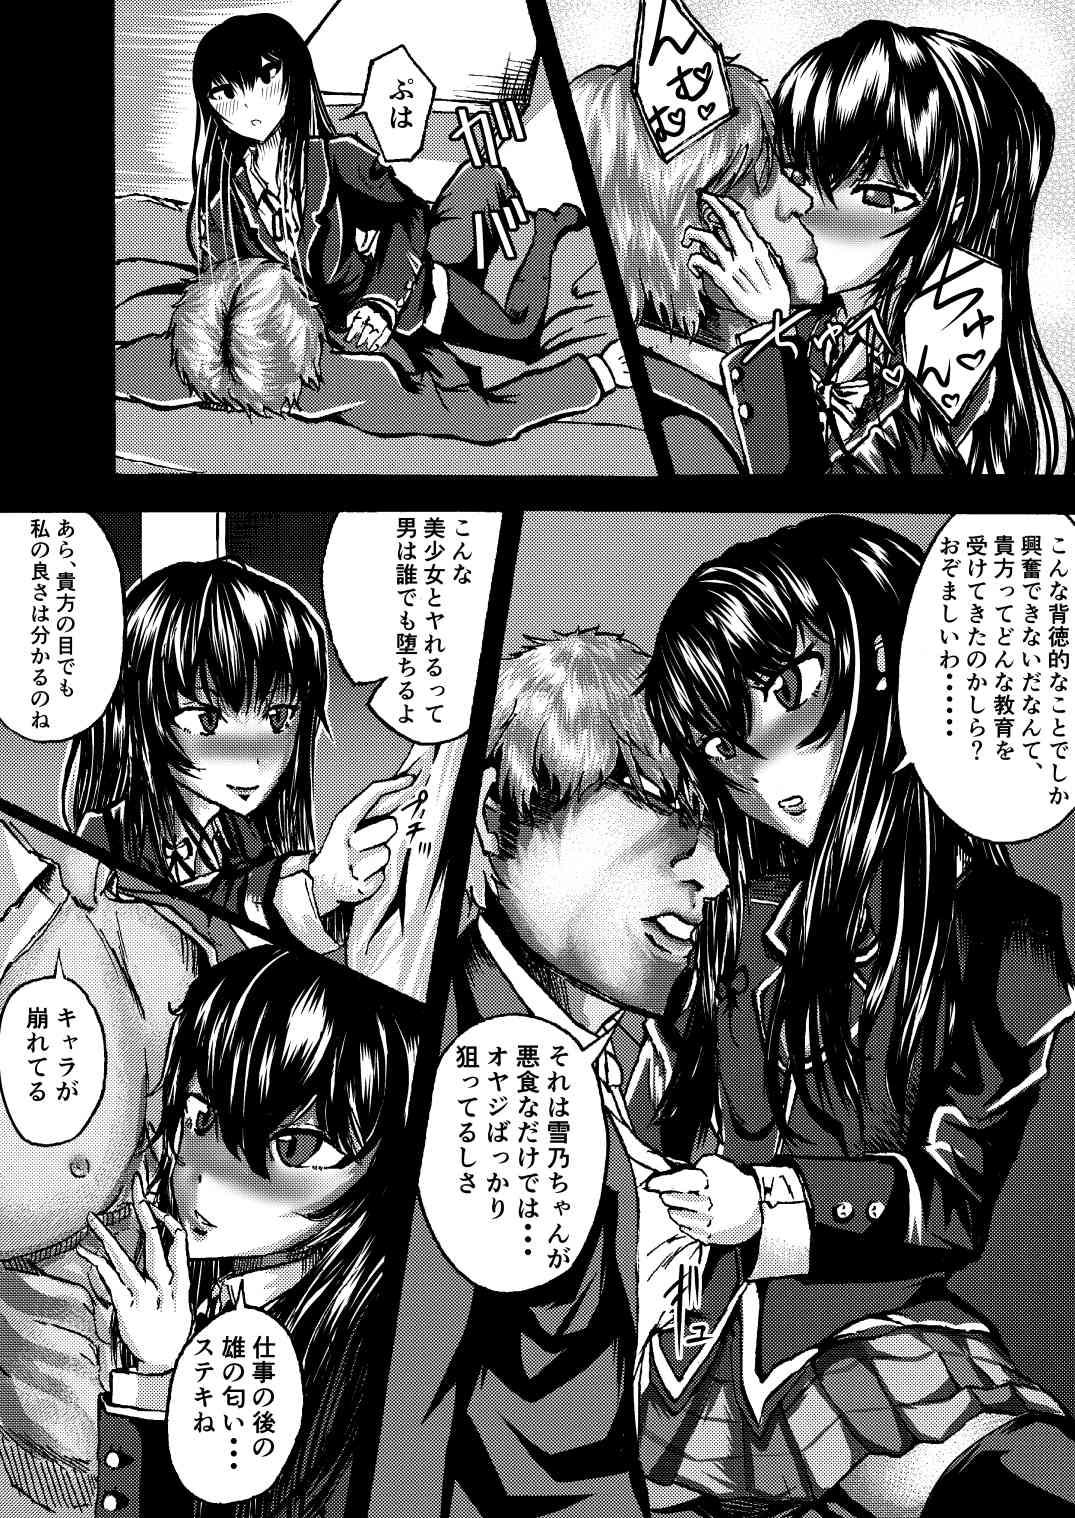 Cougars Yukinon to SEX Shitain daro!? - Yahari ore no seishun love come wa machigatteiru Gaygroup - Page 5